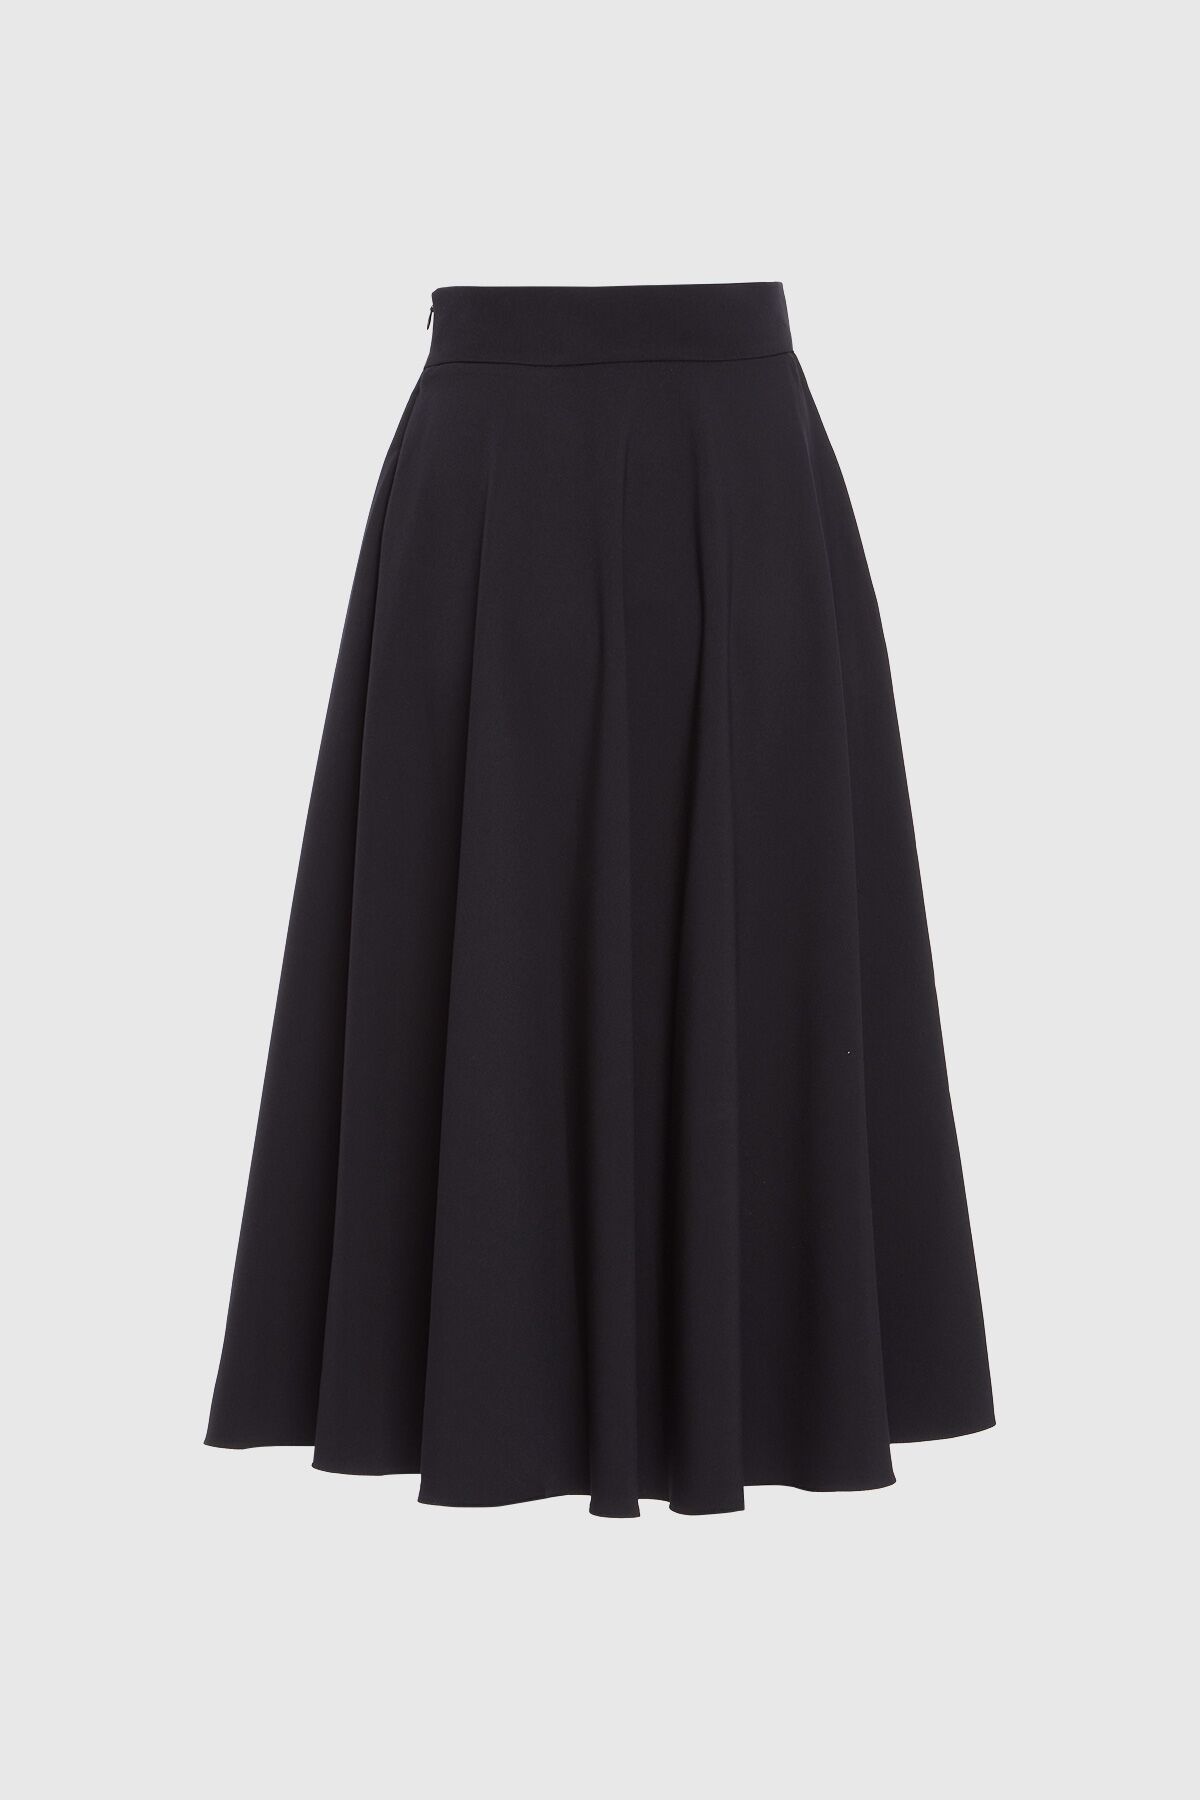 4G CLASSIC - Black Flared Skirt